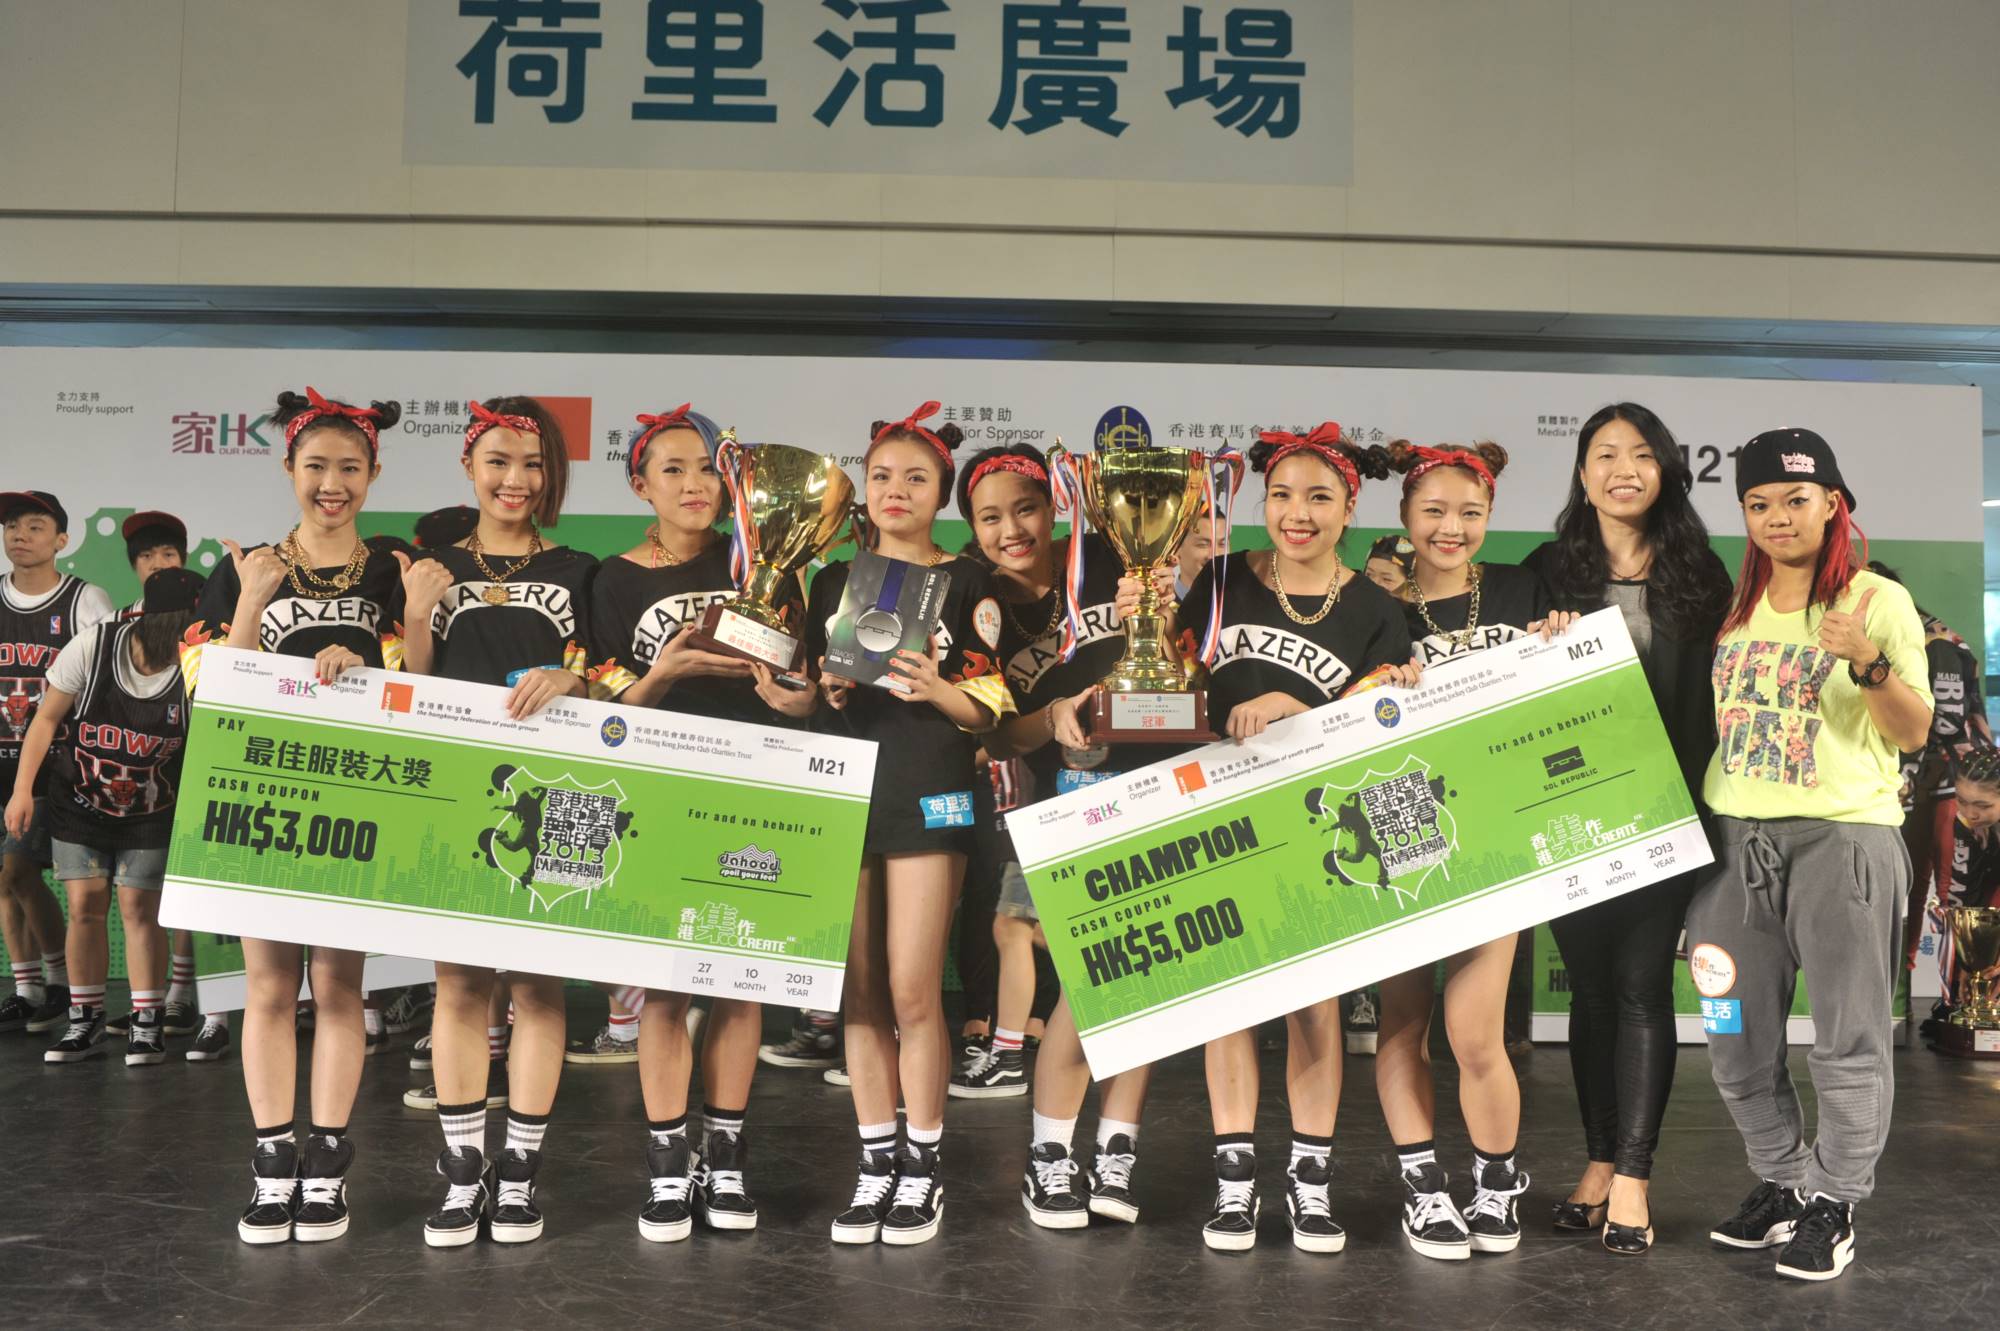 全港中學生舞蹈賽2013得獎隊伍 (4)